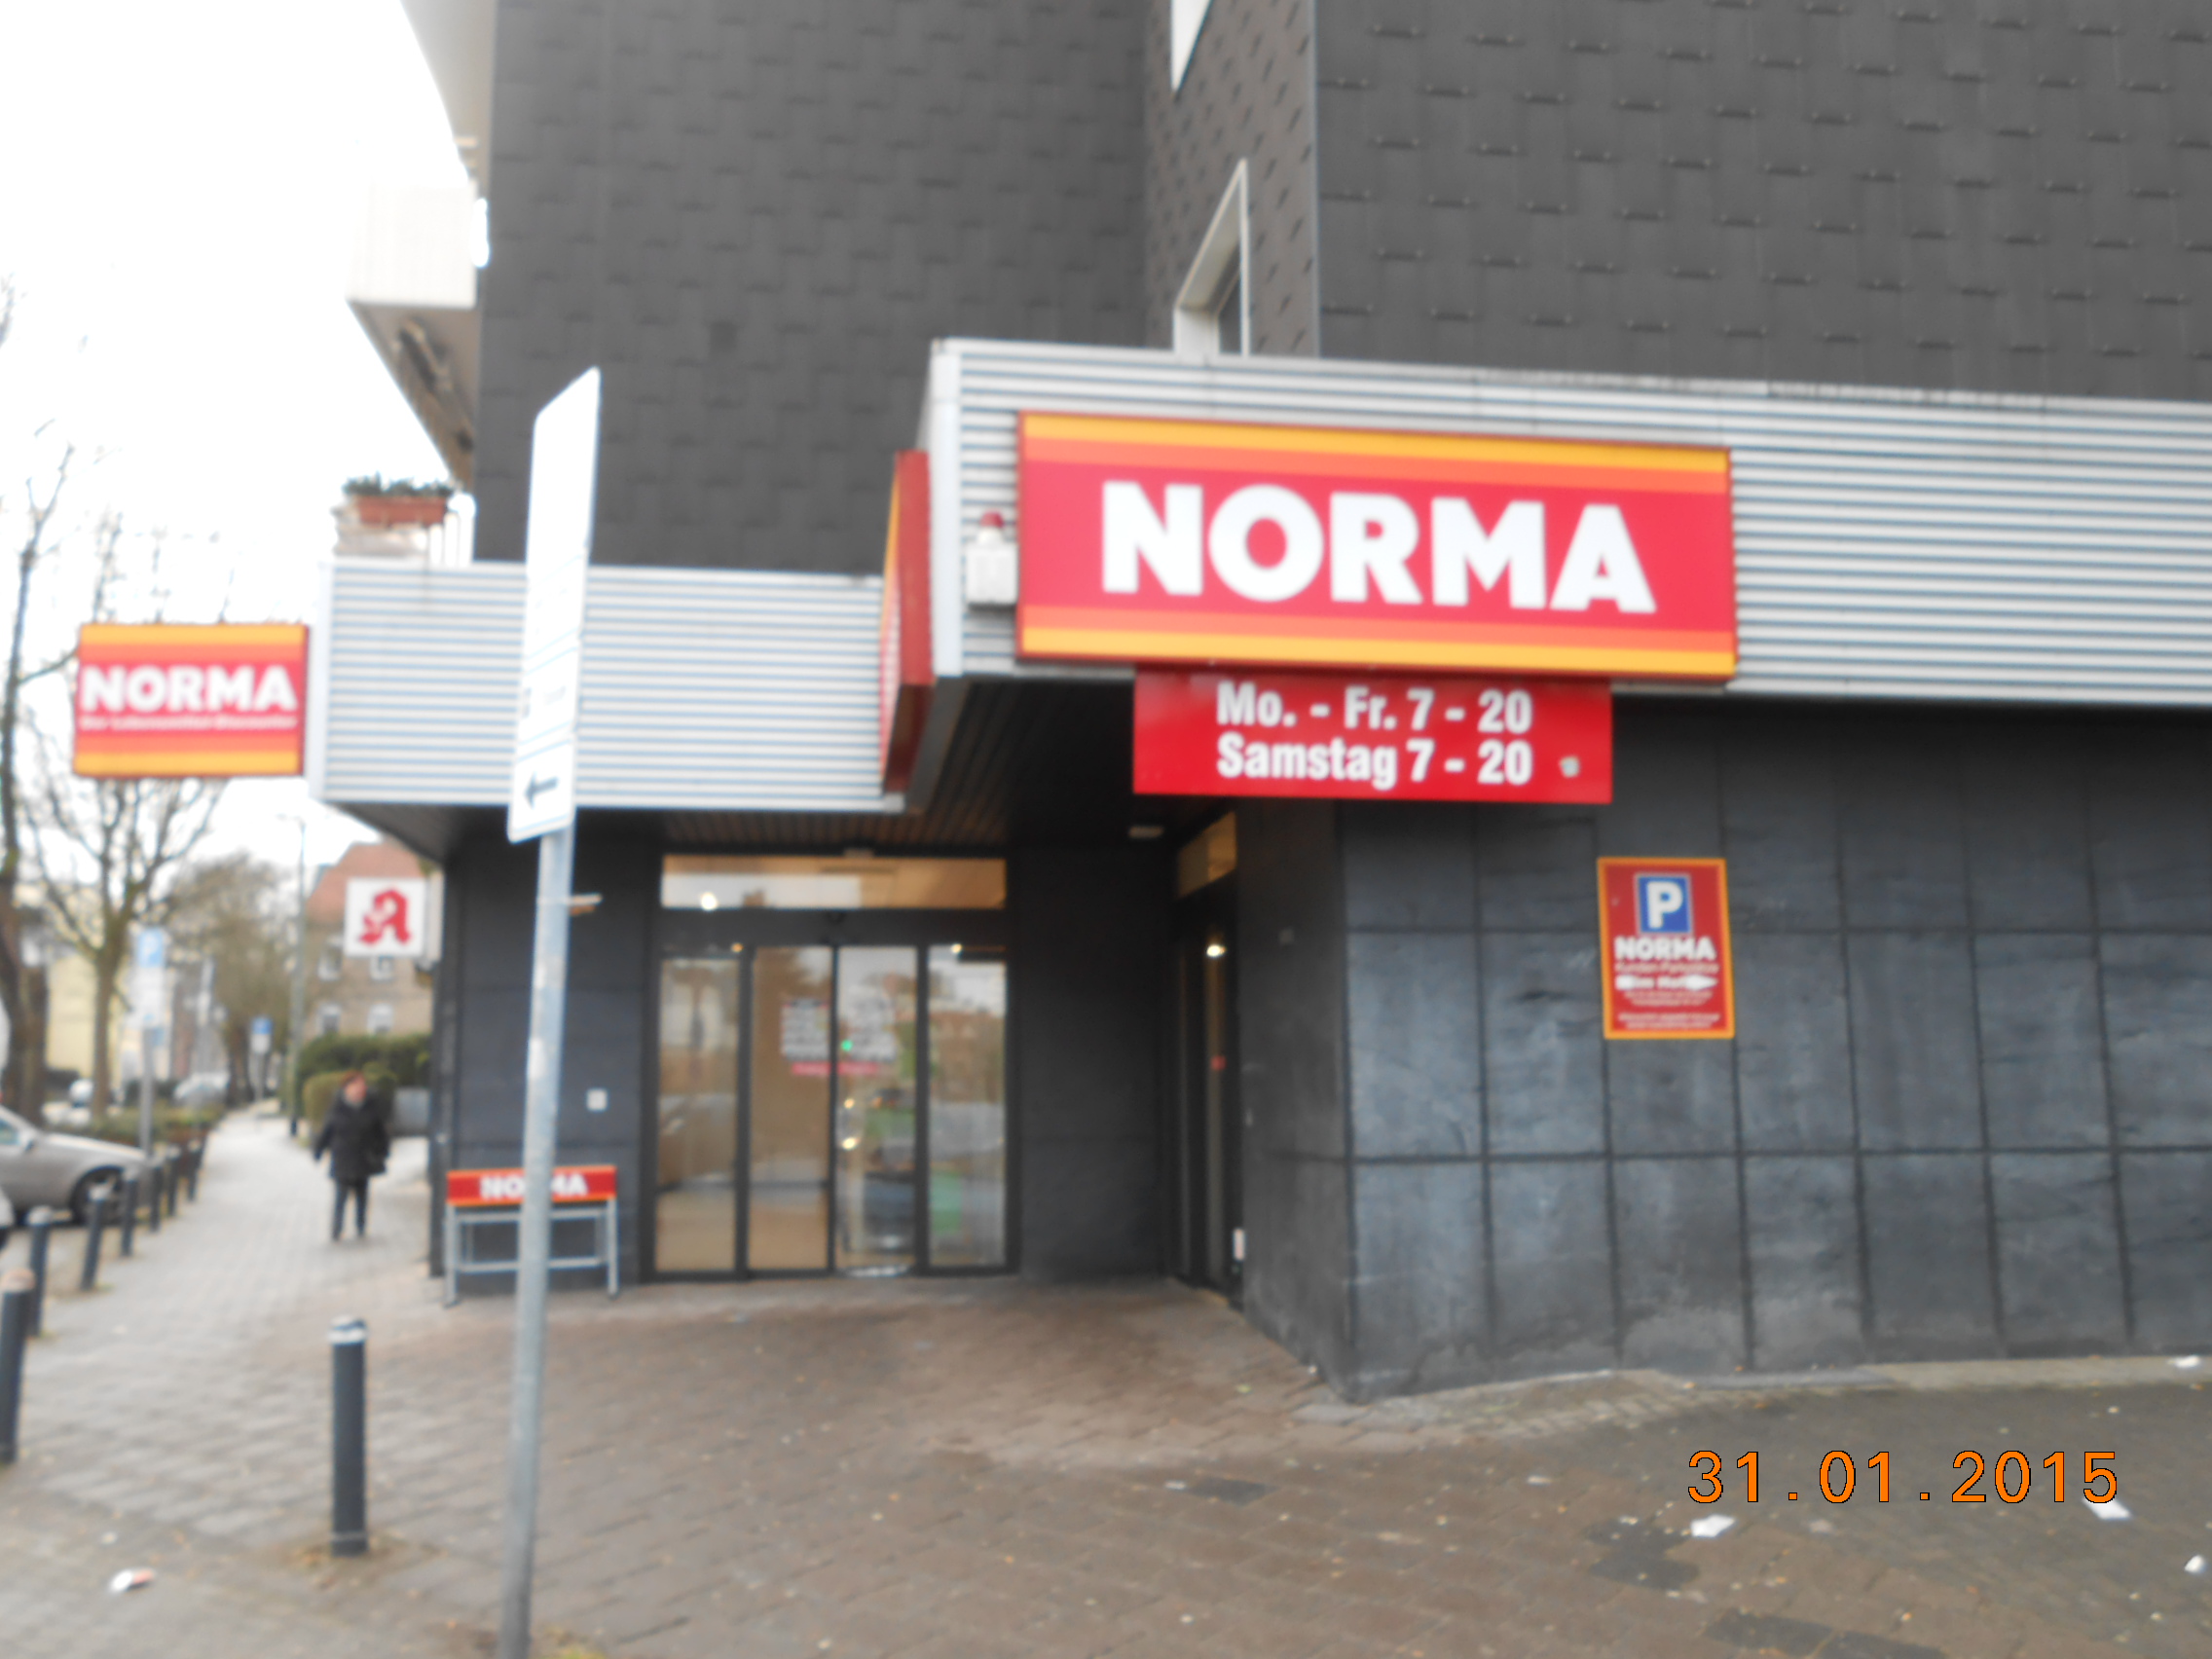 Eingang zum Norma in Hattingen